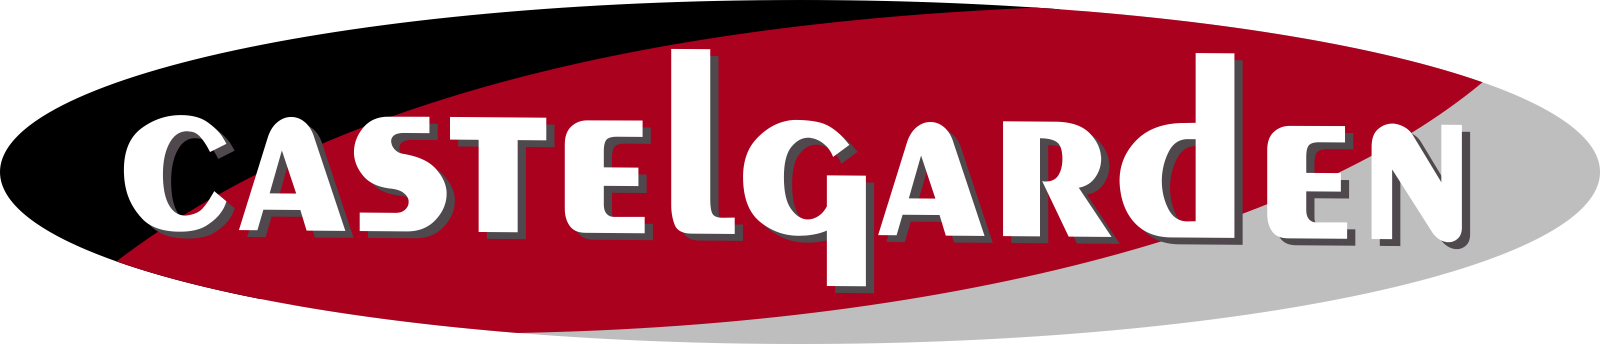 Castelgarden Logo photo - 1